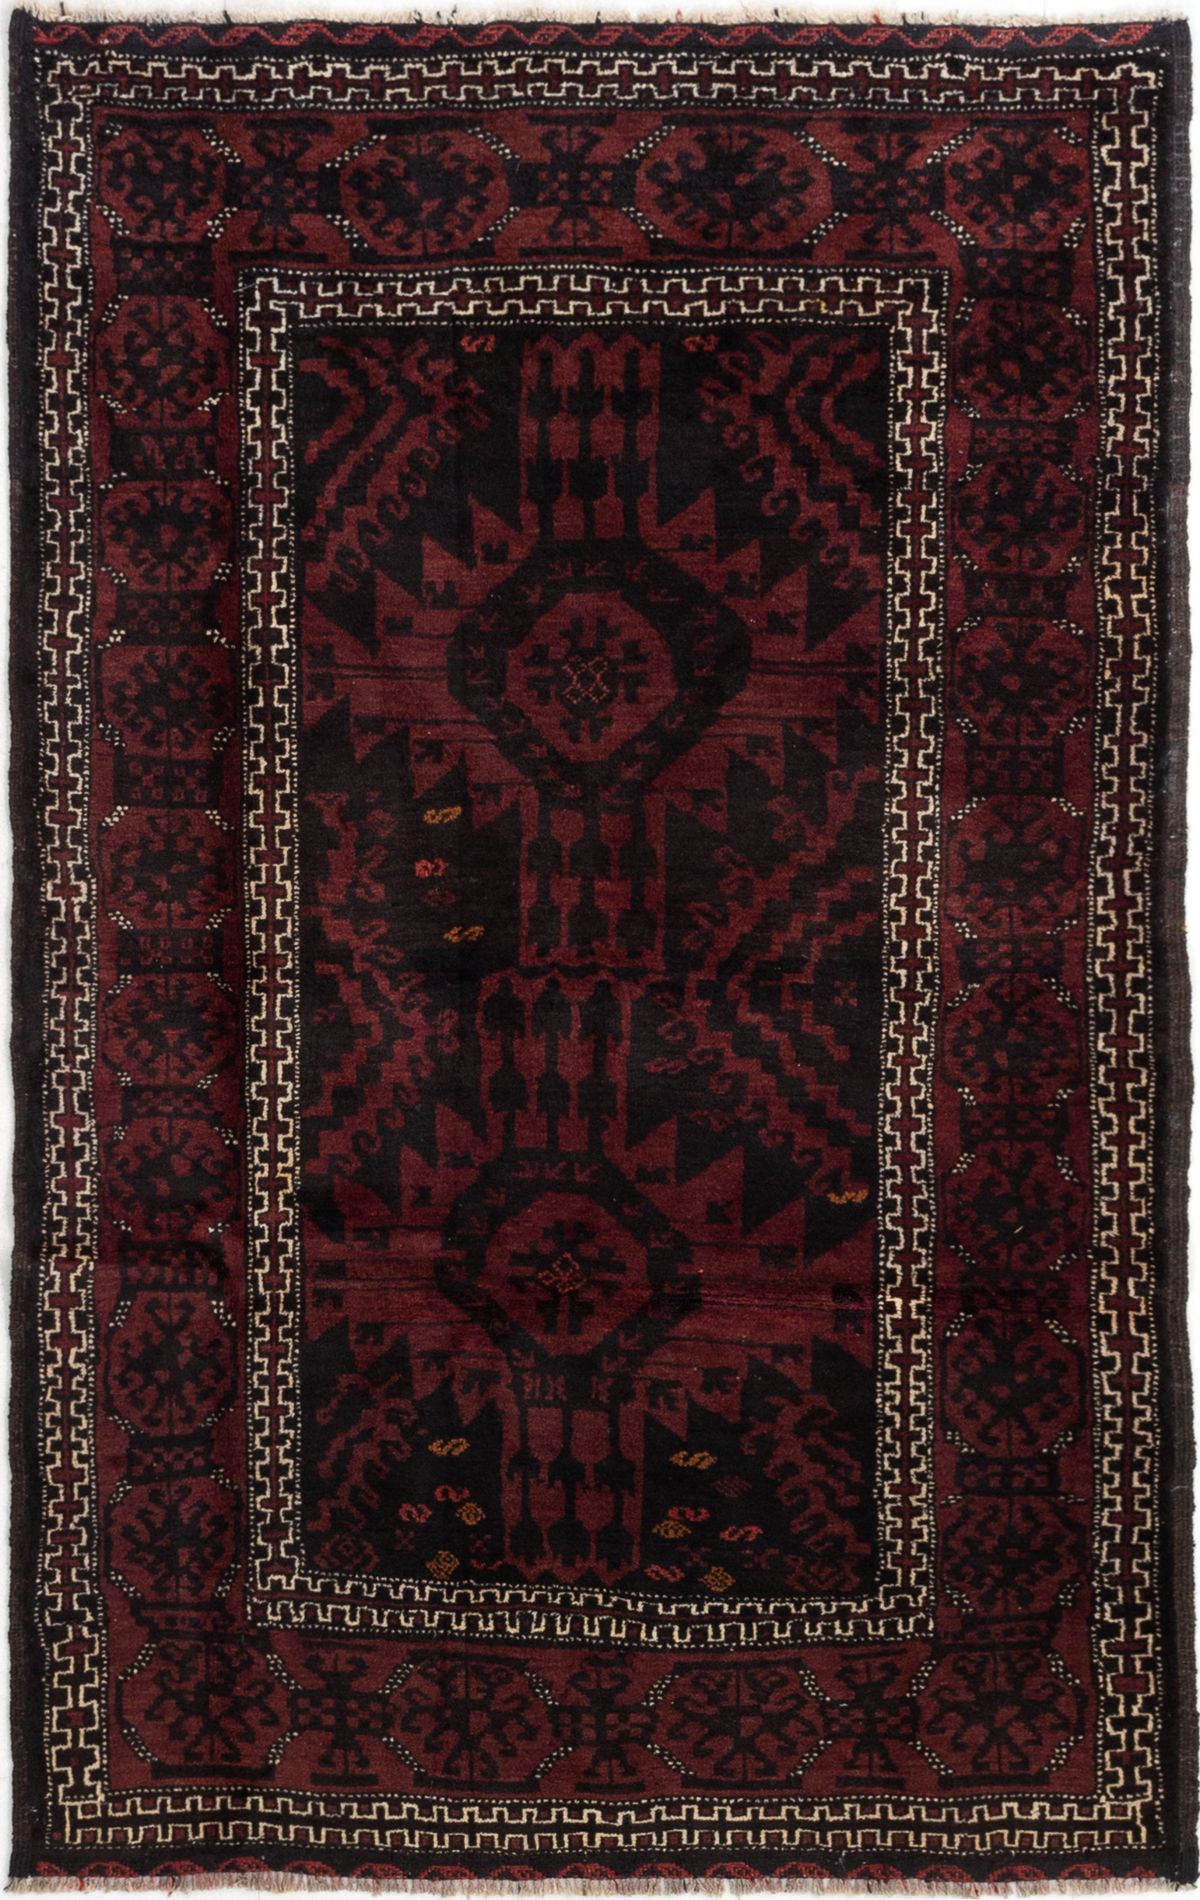 Hand-knotted Kazak Black, Dark Red Wool Rug 3'8" x 5'10" Size: 3'8" x 5'10"  